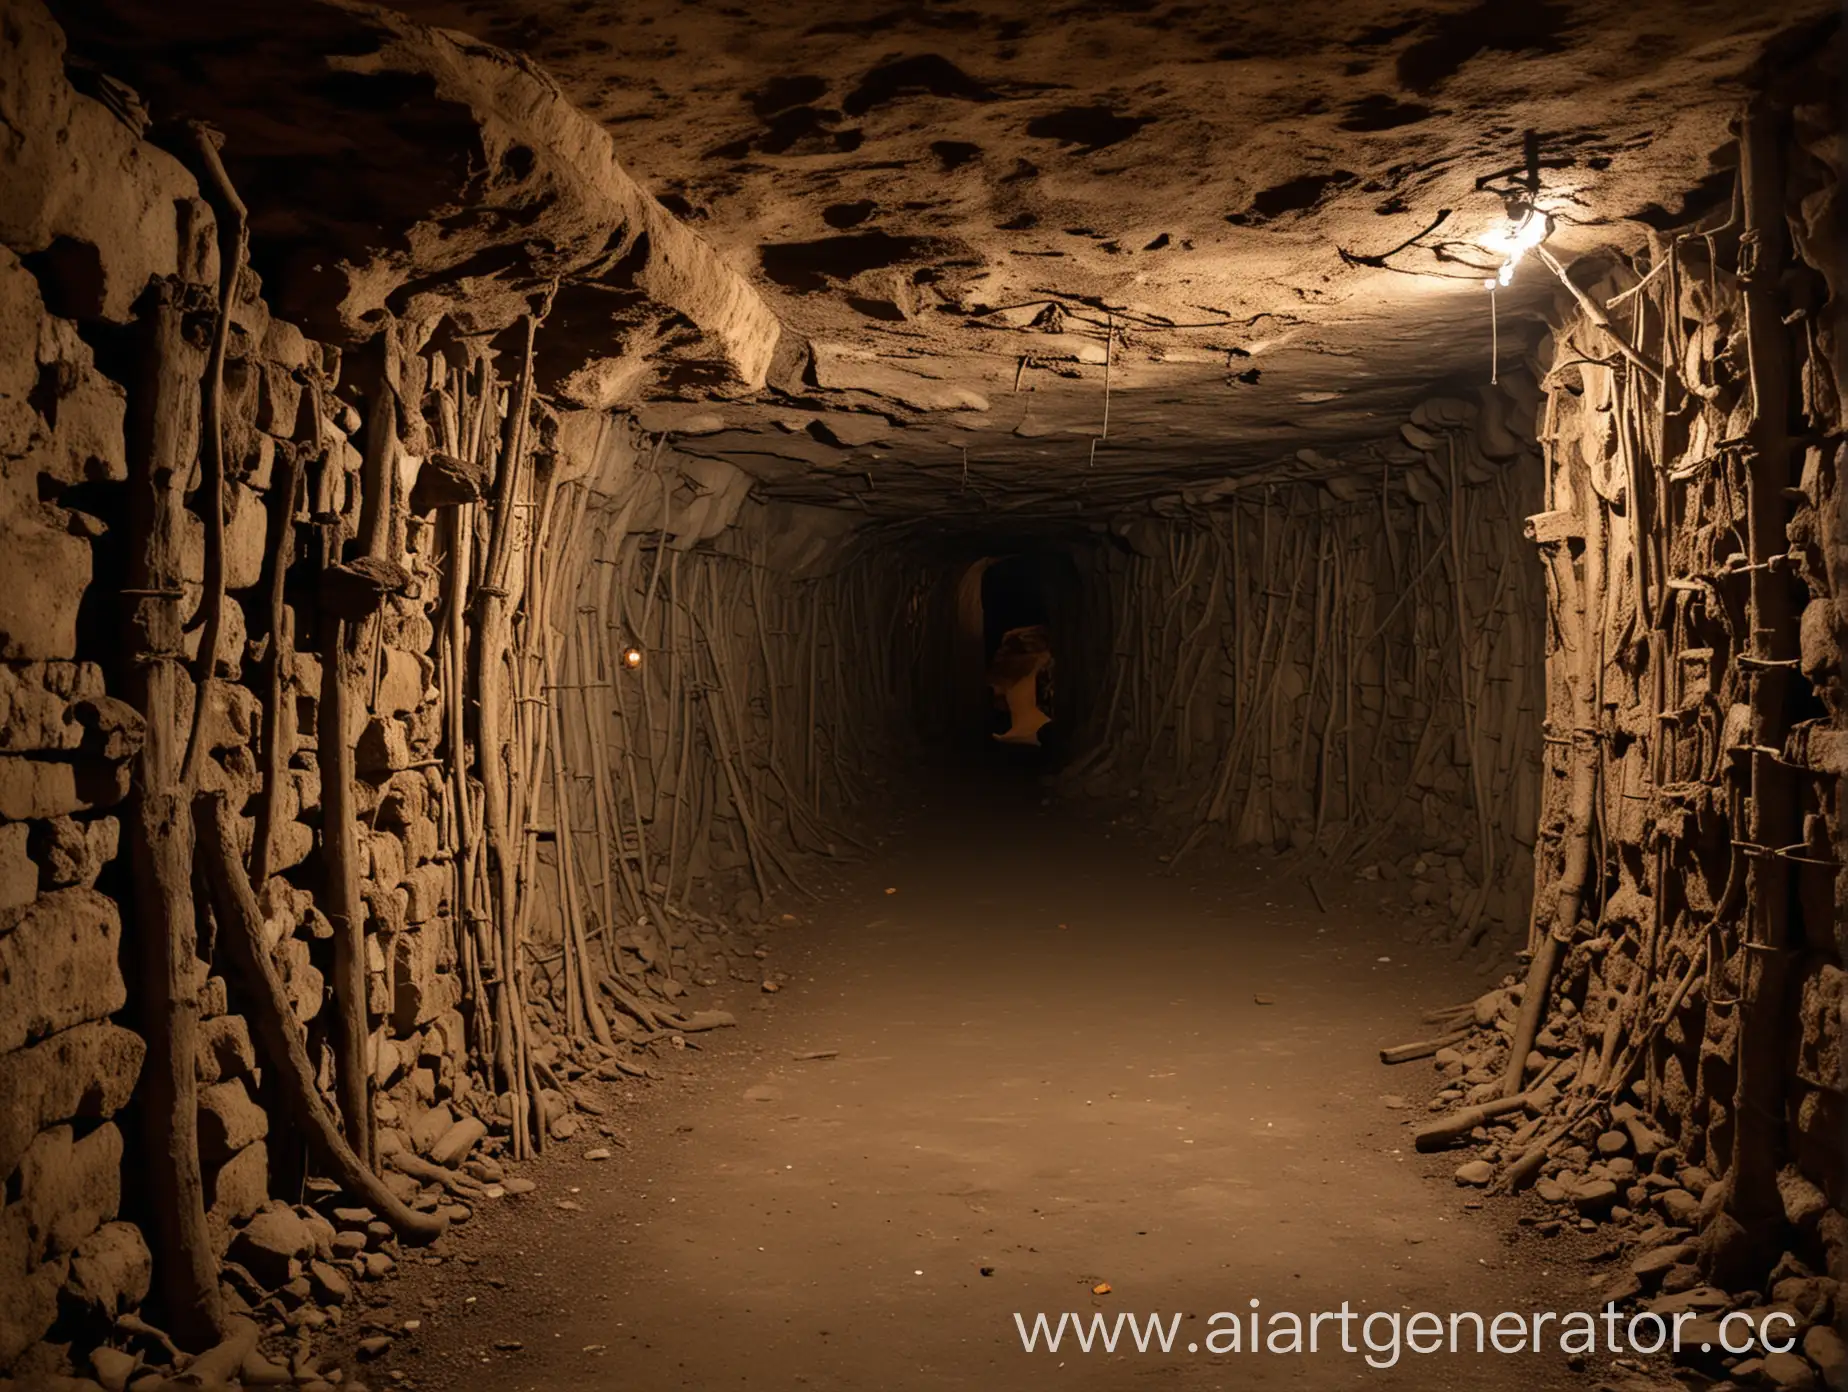 Древние, местами заваленные катакомбы. На стенах пустые держатели для факелов. Внутри довольно опасно. Разветвленная сеть туннелей может сбить с толку и опытного спелеолога.